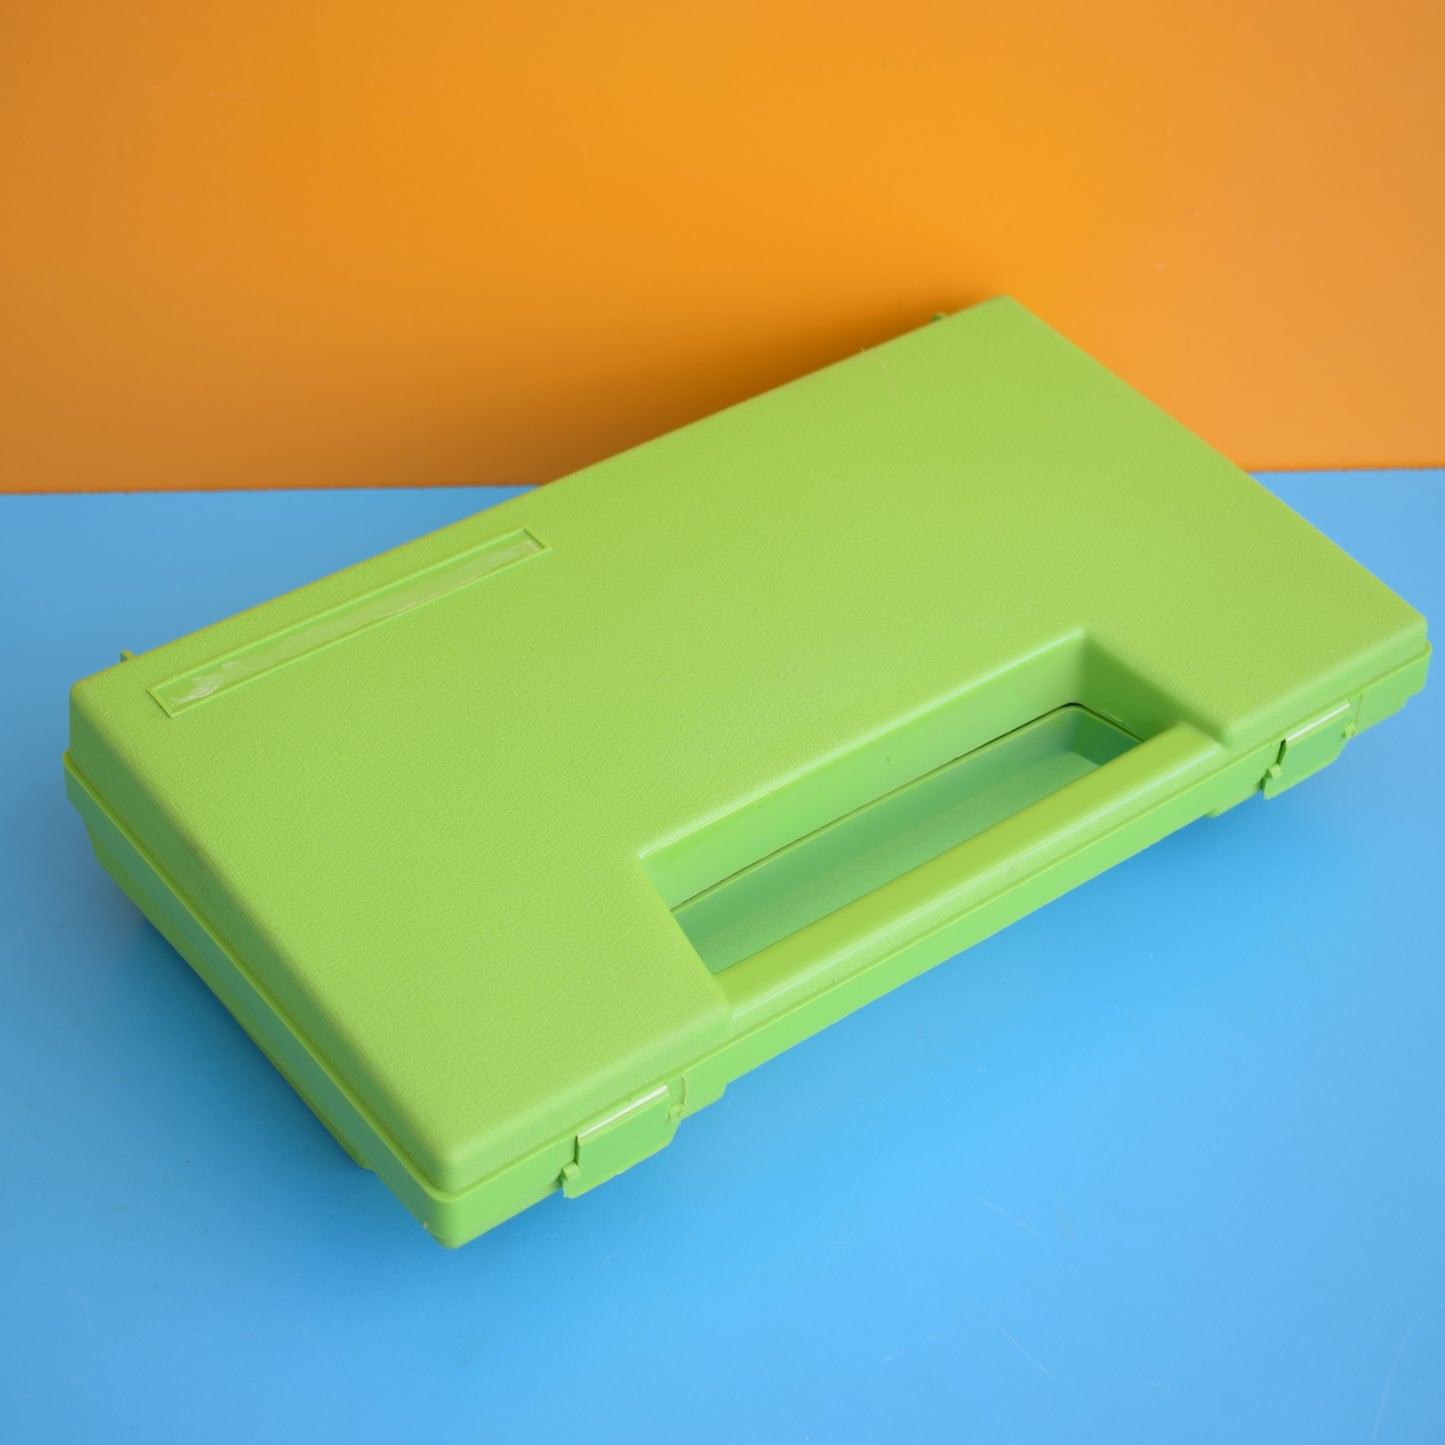 Vintage 1980s Storage Case - Apple Green